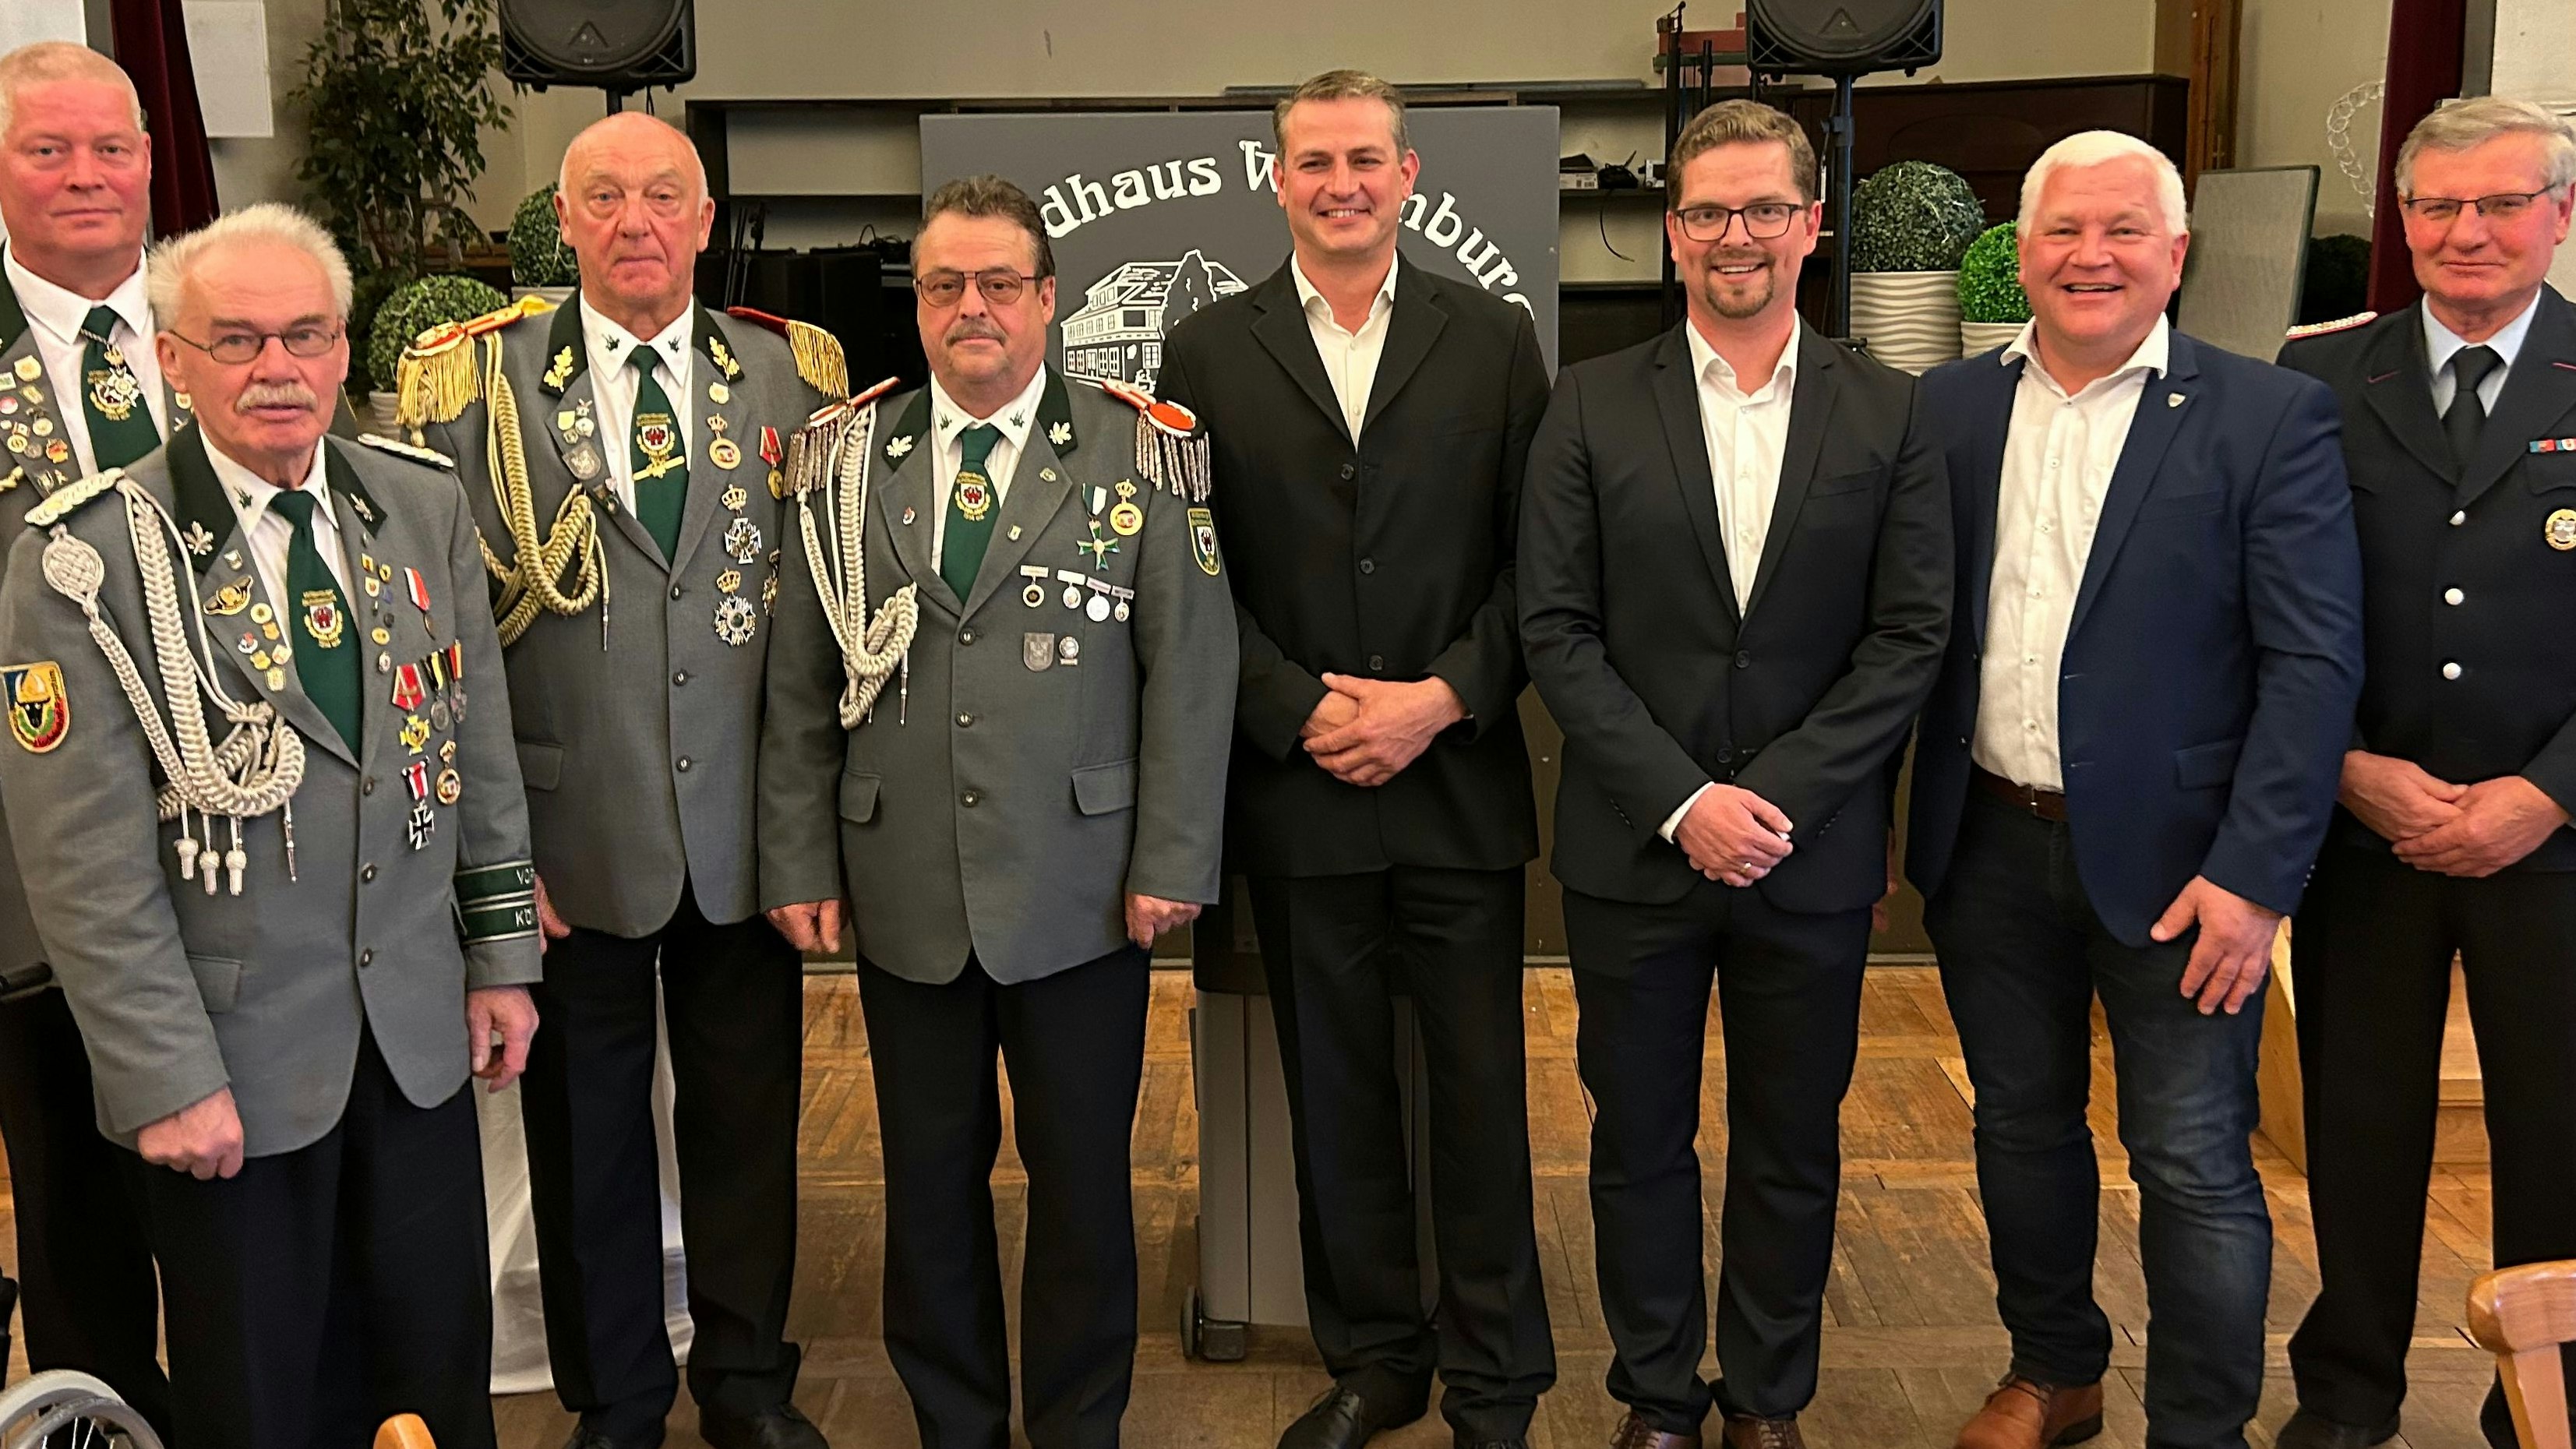 Unter Freunden: Burkhard Sibbel (2. von rechts) war zum Jahresempfang der Stadt Wittenburg eingeladen. Dort wurde er von Bürgermeister Christian Greger (3. von rechts) und Bürgervorsteher Marcel Schulz (4. von rechts) begrüßt. Foto: Stadt Wittenburg